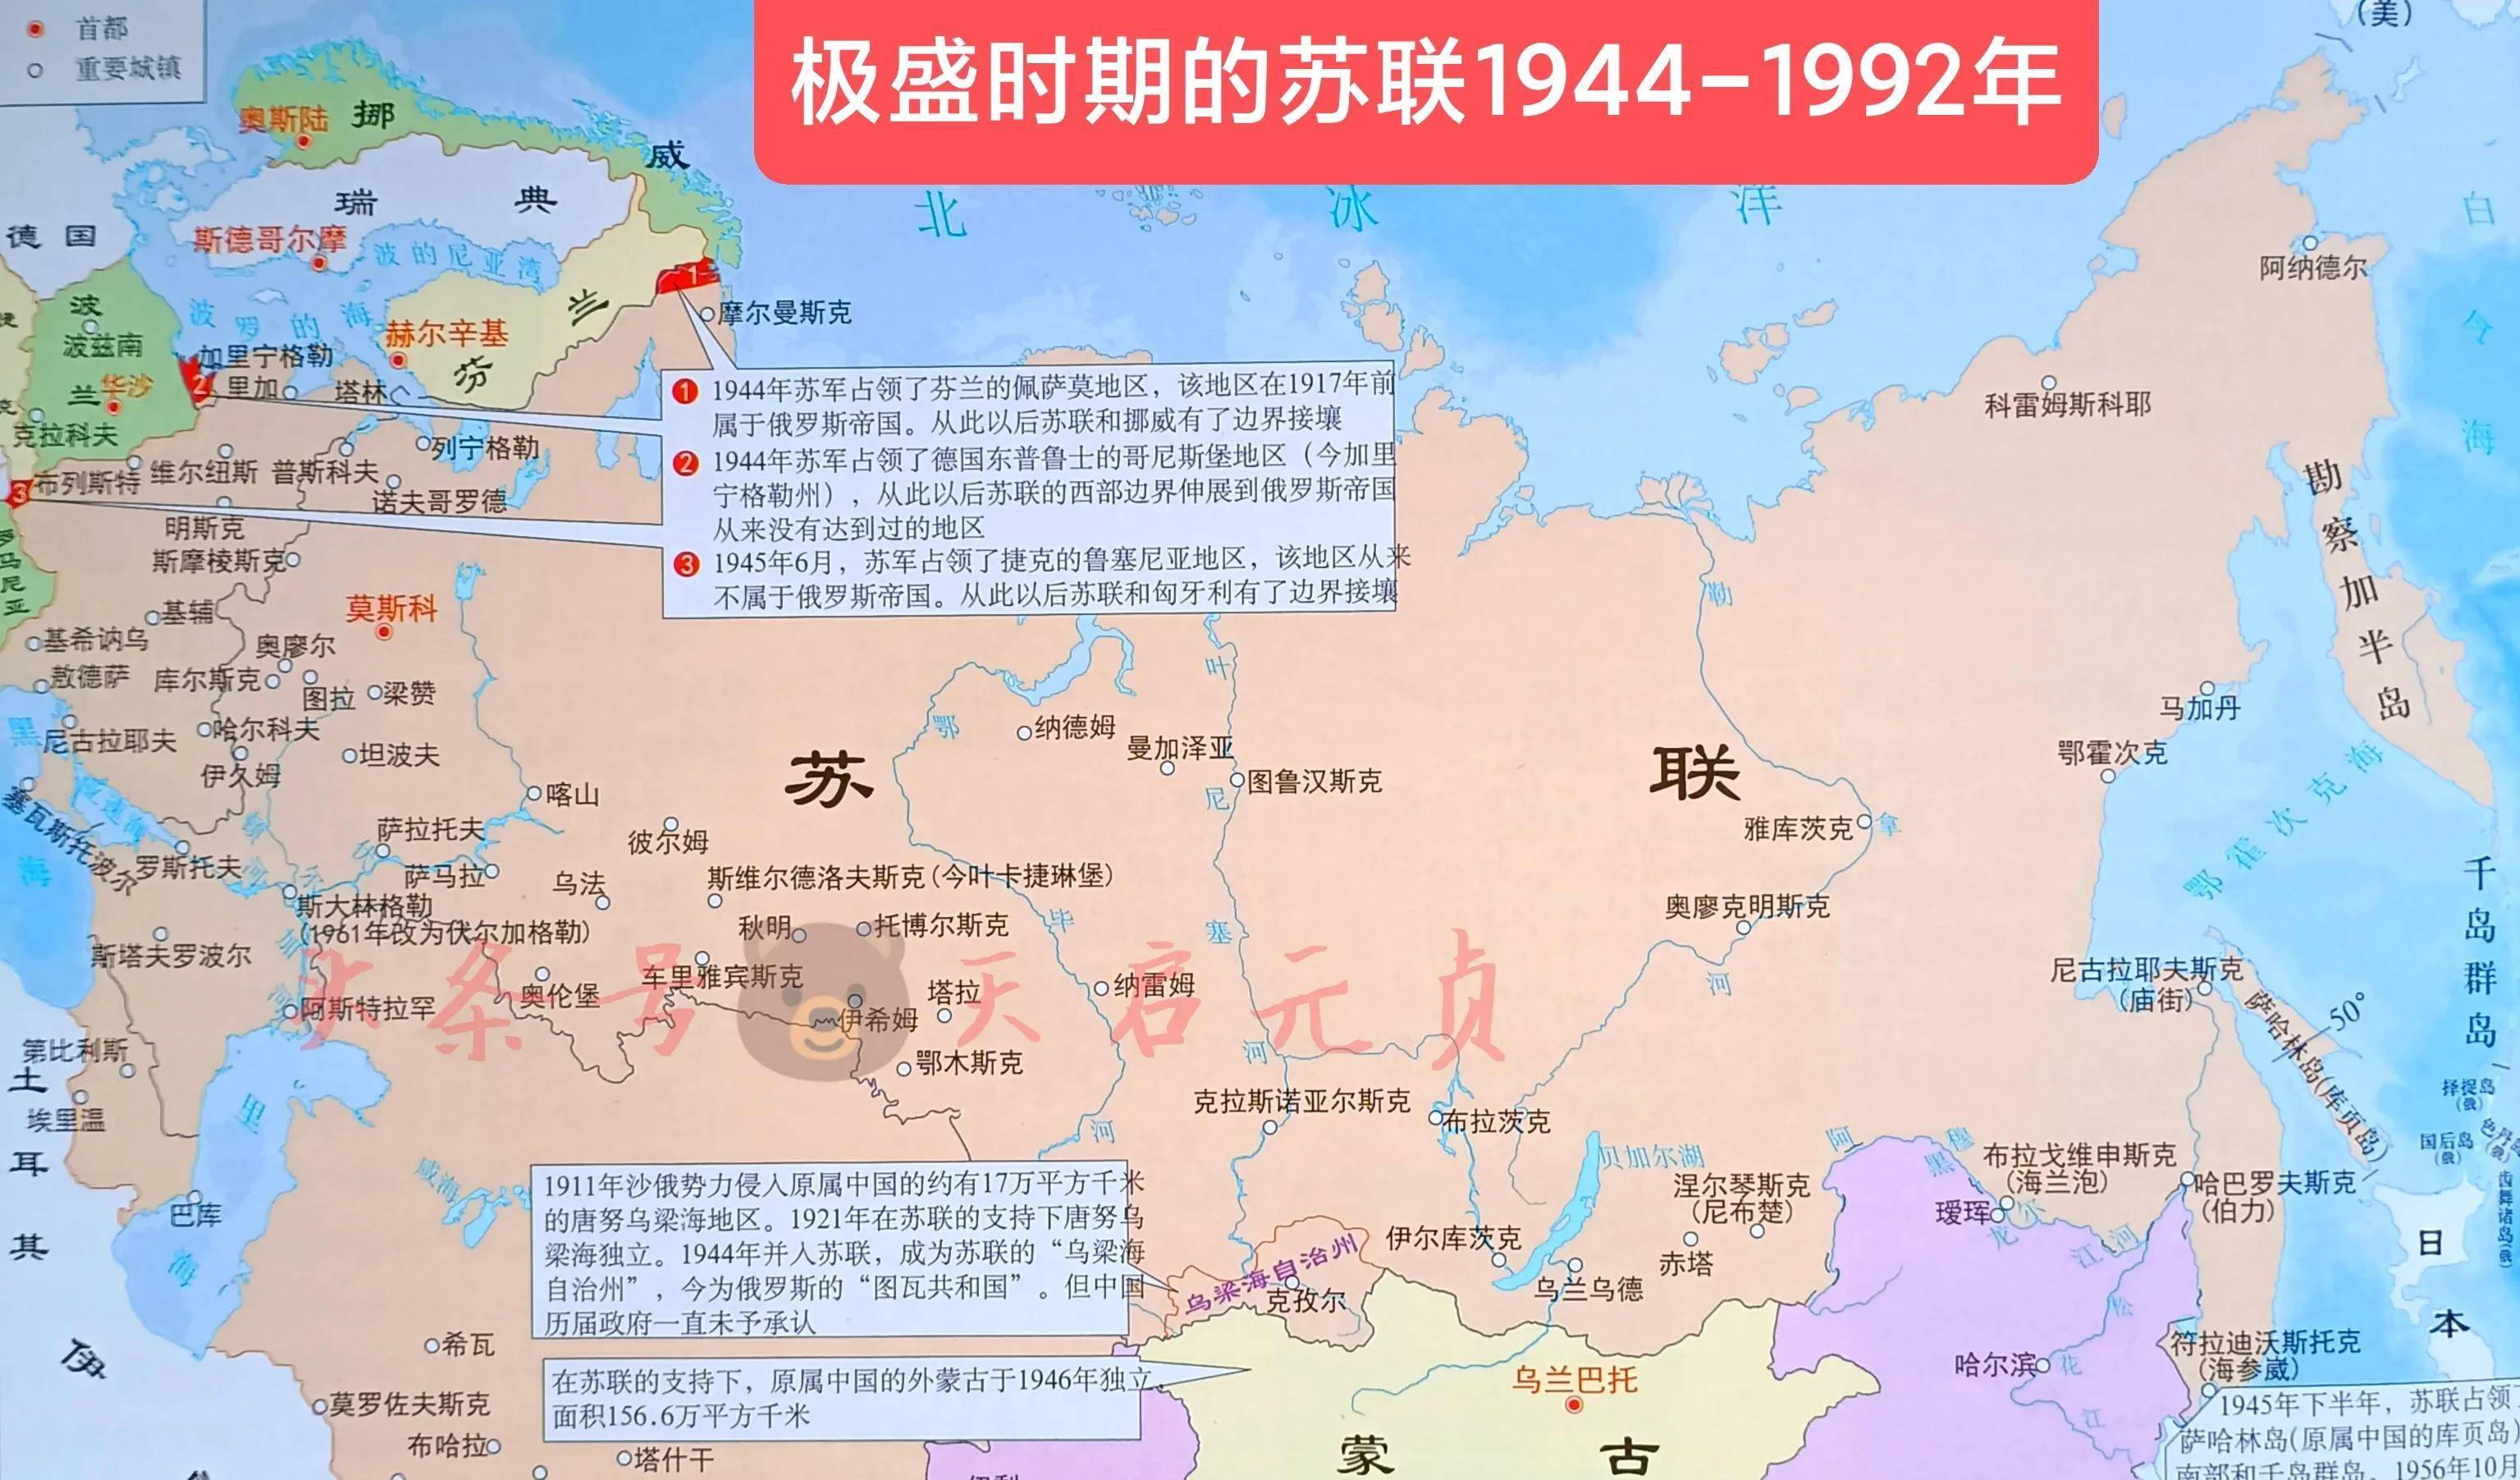 苏联的版图变迁:23年再造俄罗斯帝国,为何不到70年就解体?